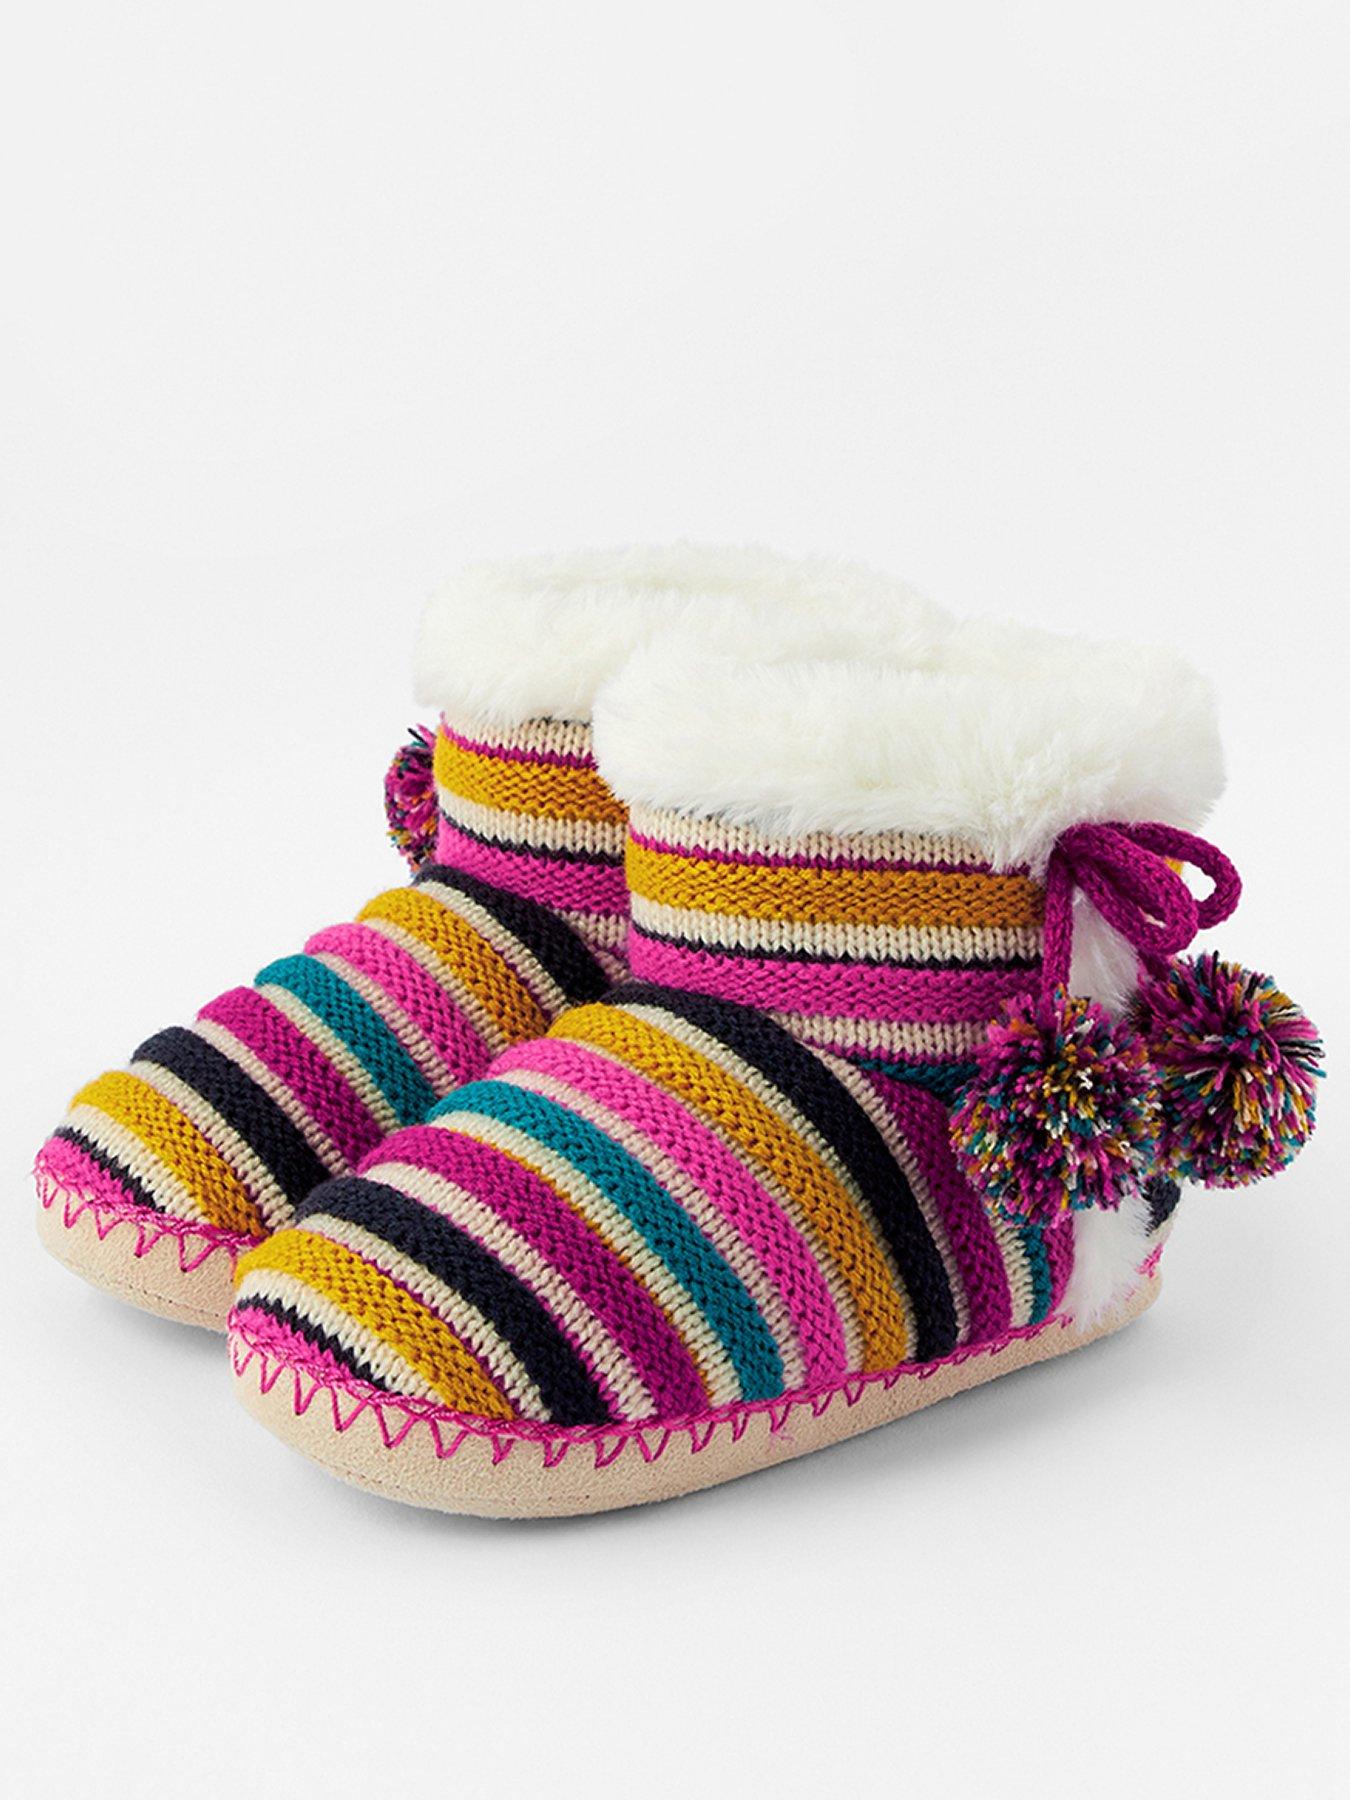 slipper boots for girls